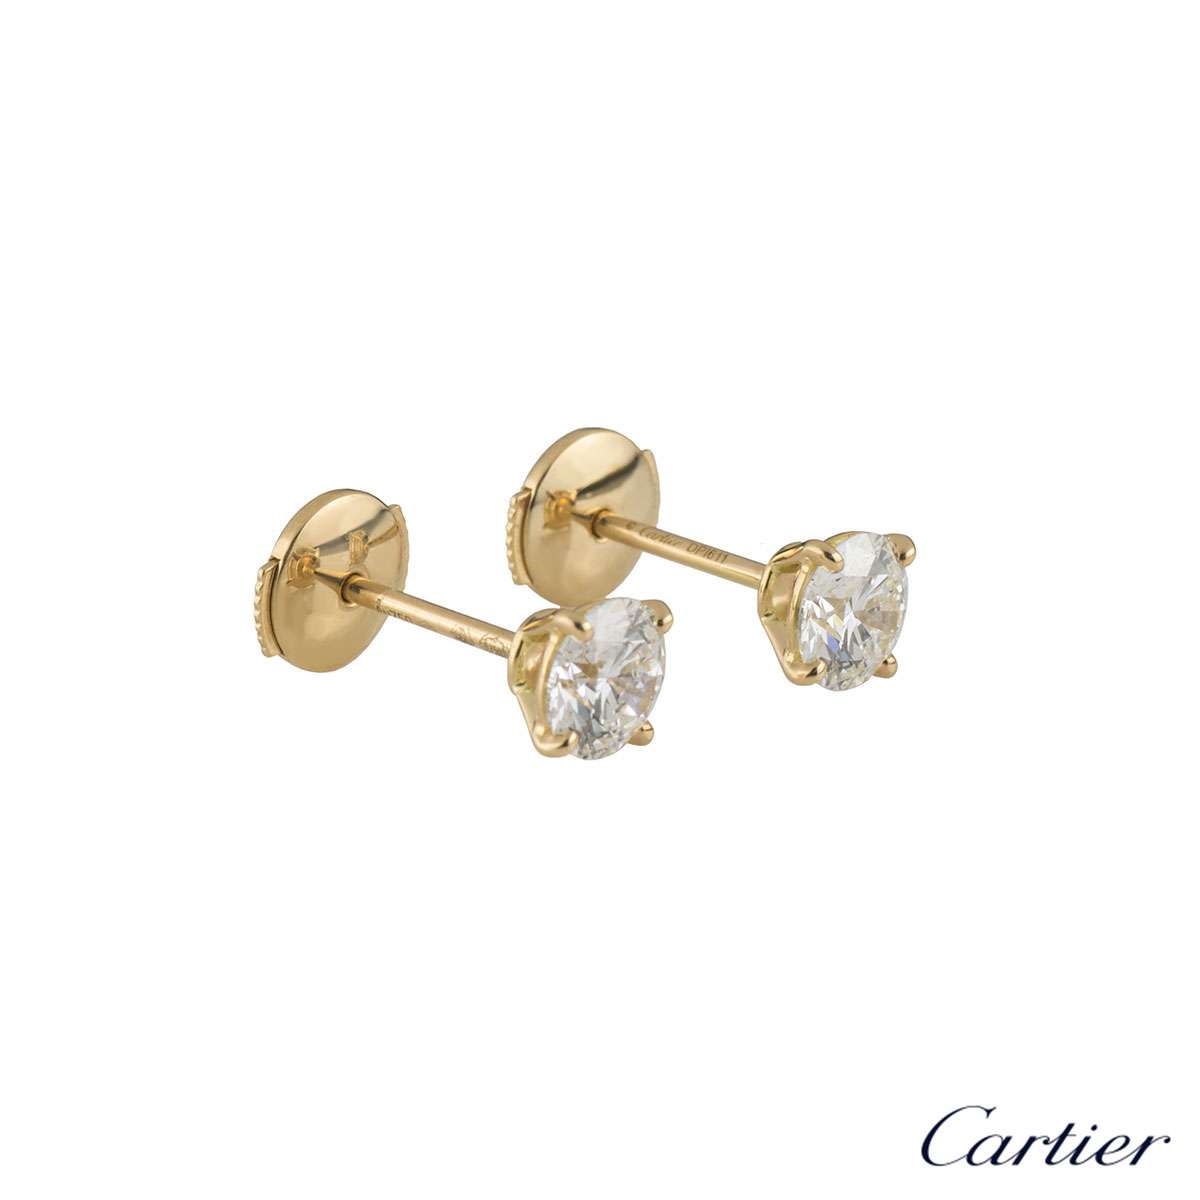 cartier earrings price